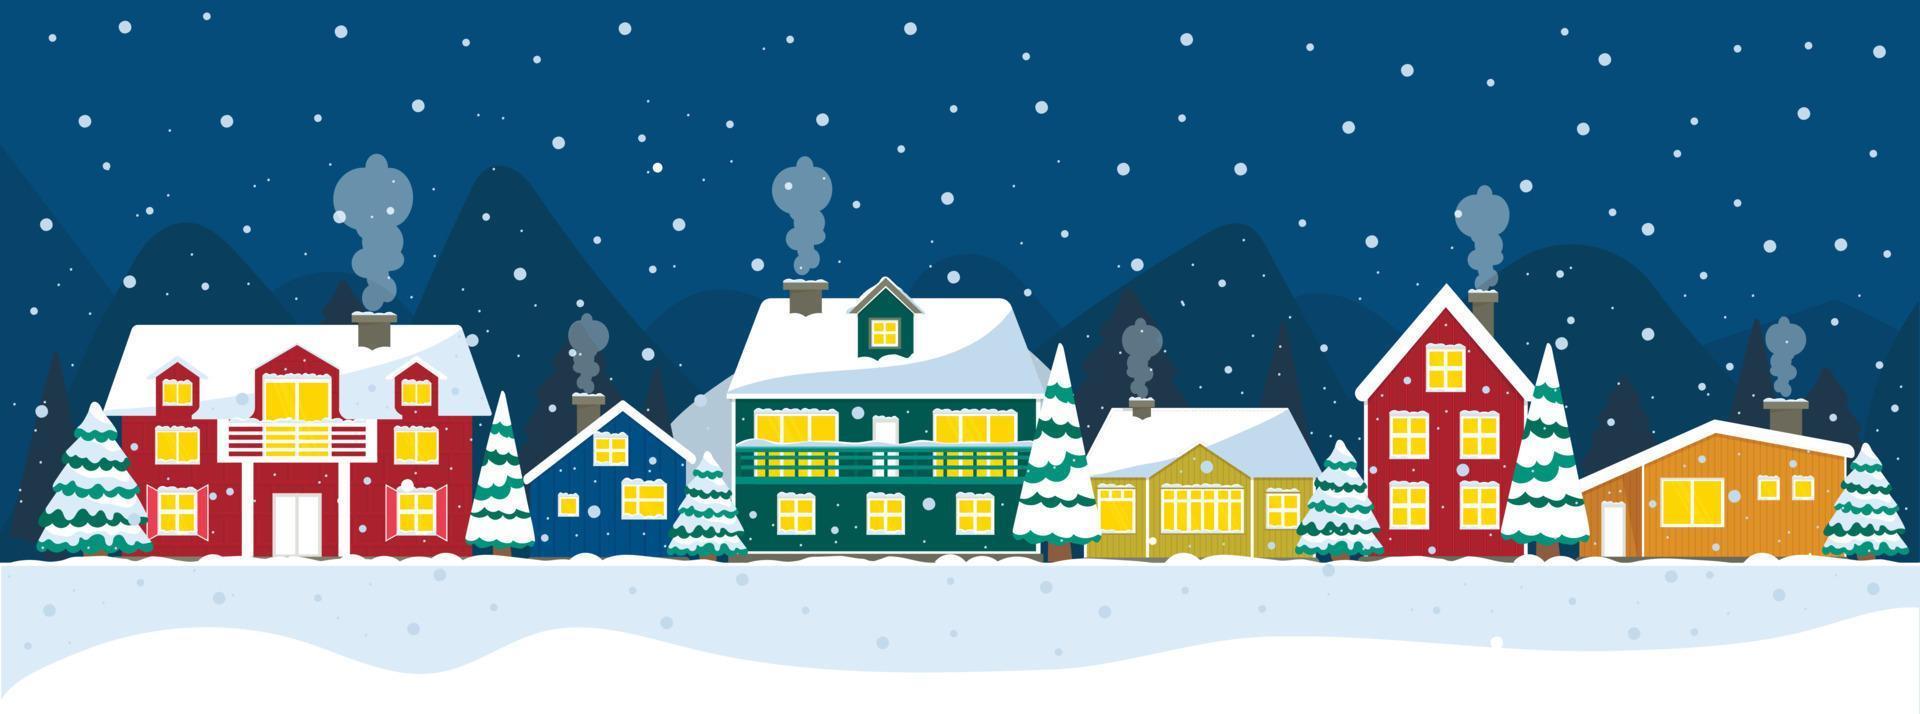 notte nevosa in un accogliente panorama natalizio del villaggio. paesaggio notturno di natale invernale. case colorate islanda, polo nord, olanda. elemento di architettura della norvegia. vettore